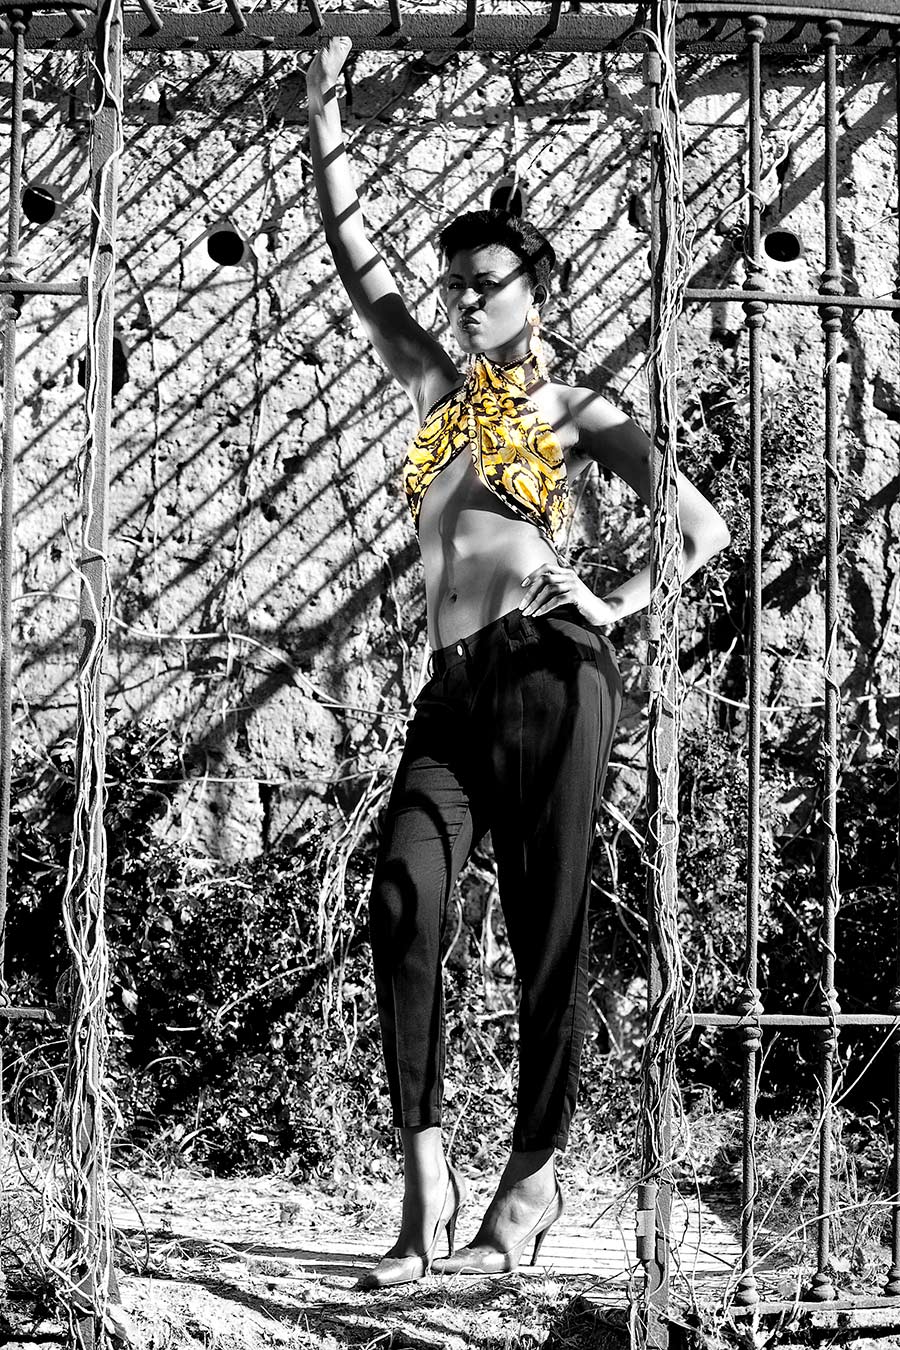 Modella in piedi ritratta in bianco e nero, indossa un top incrociato giallo - Dialoghi / Dissing - Gianni Versace Magna Grecia Tribute (photo©iTrancheseFotografi)